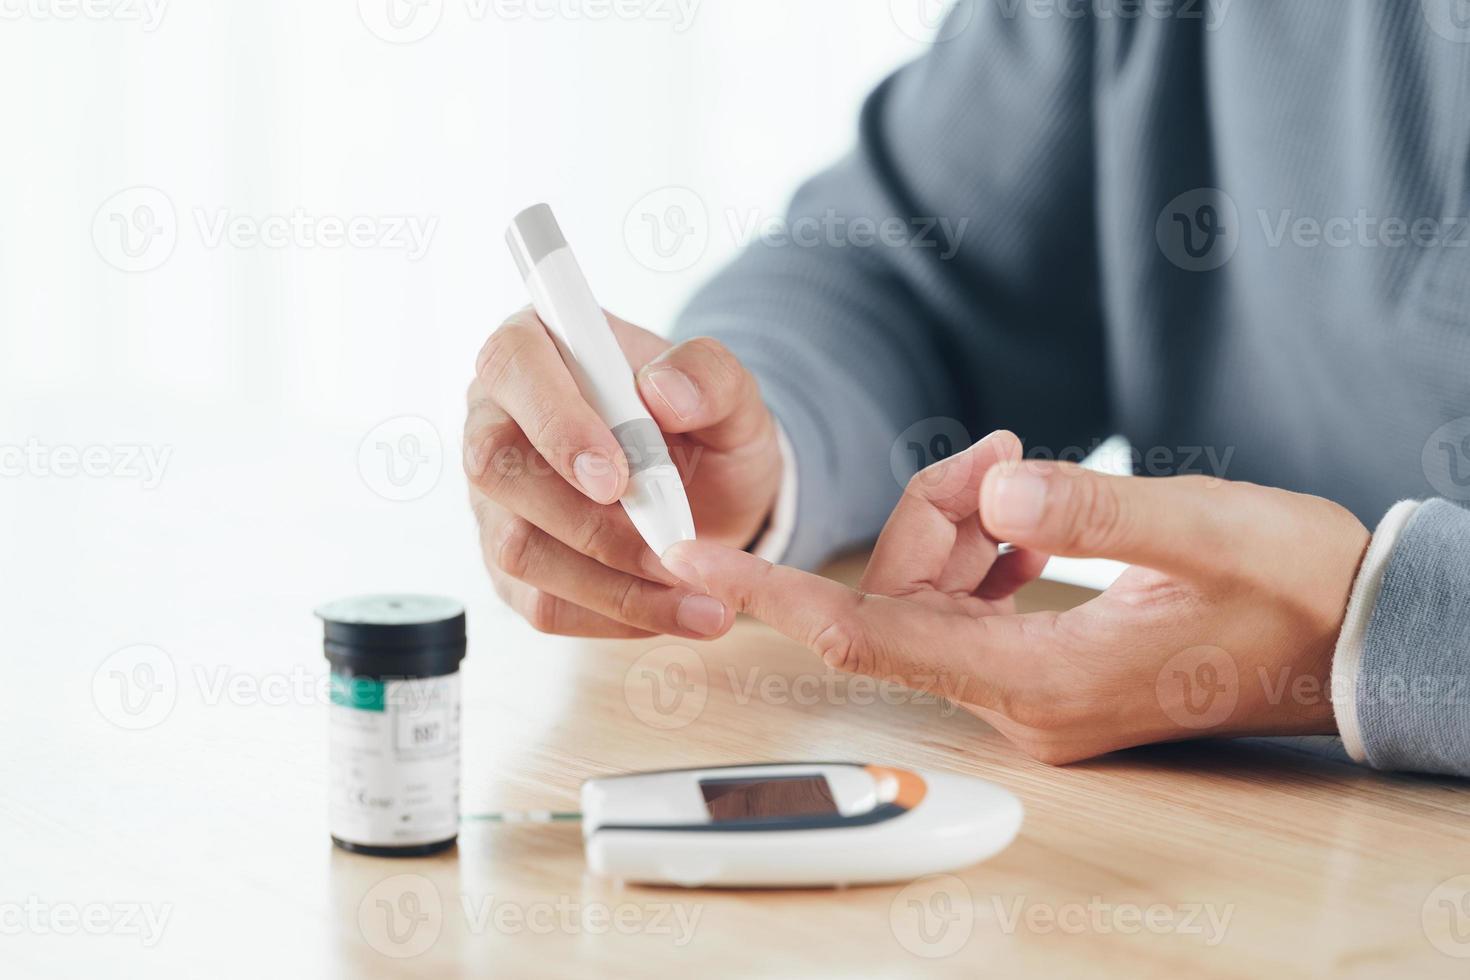 Aziatische man die lancet op vinger gebruikt voor het controleren van de bloedsuikerspiegel door glucosemeter, gezondheidszorg en medisch, diabetes, glycemieconcept foto